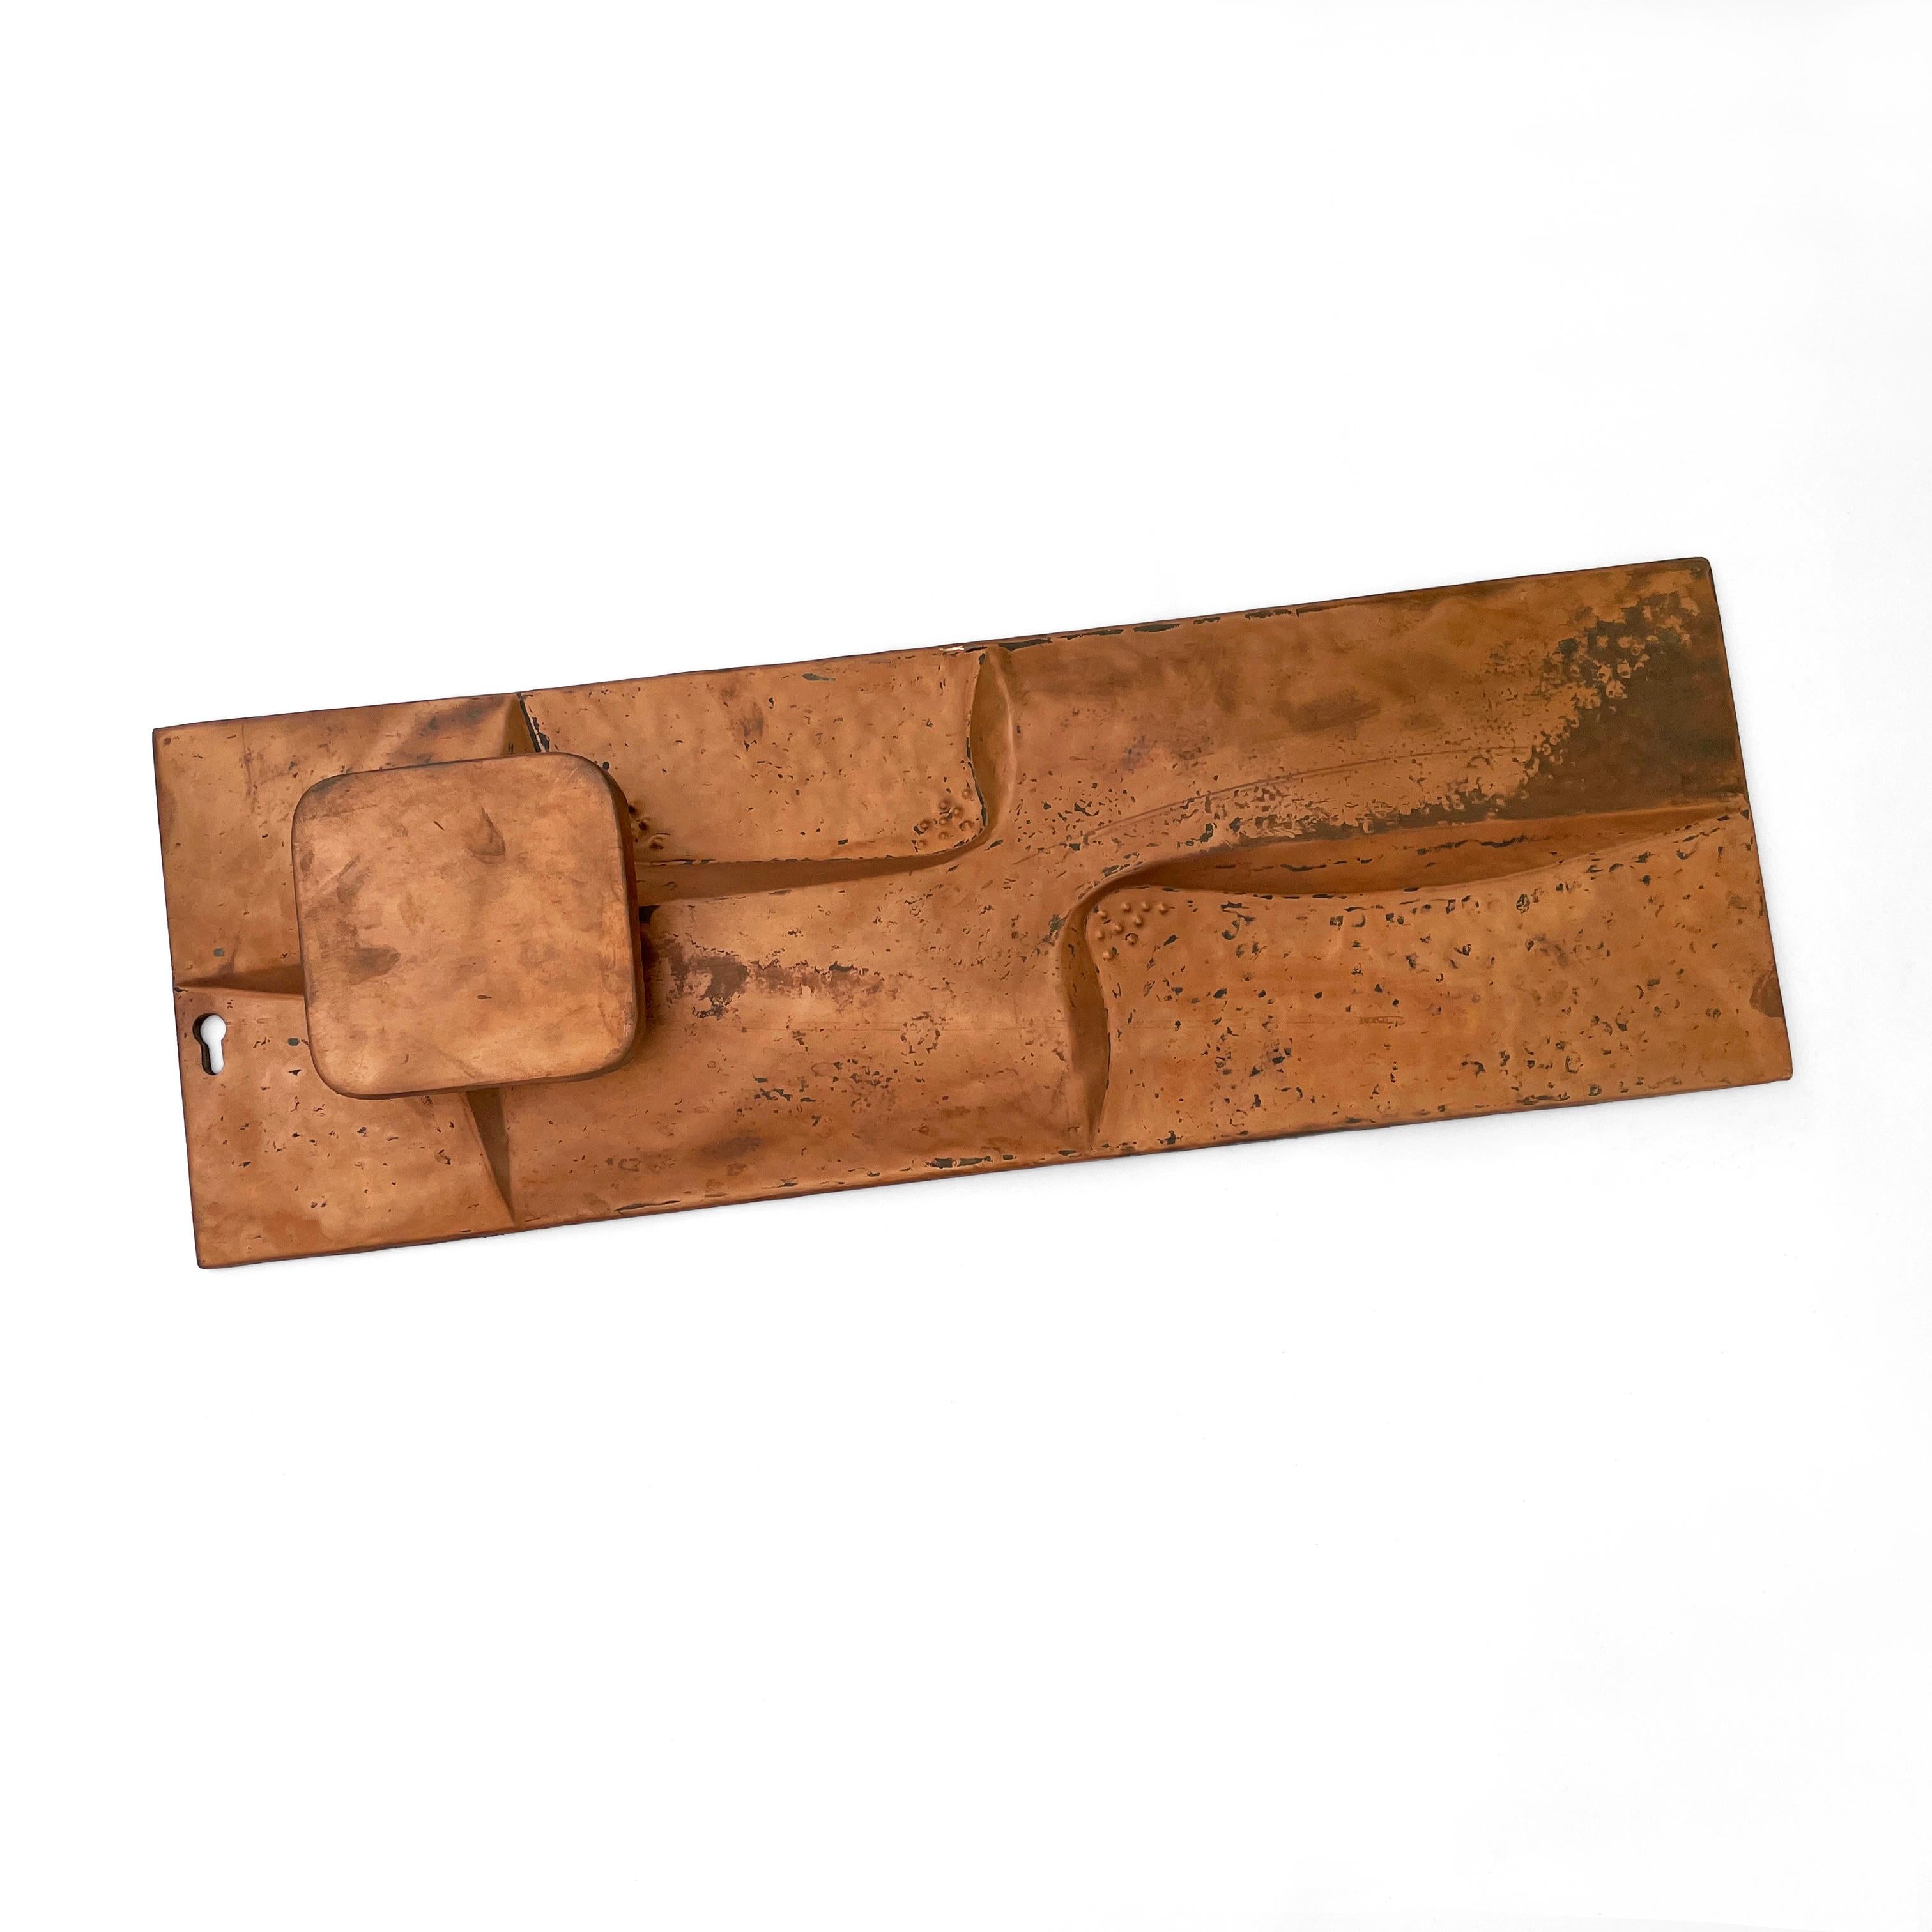 Großer seitlicher Kupfer-Türgriff aus der Mitte des Jahrhunderts mit starkem brutalistischem Relief, das ein beeindruckendes Detail für jede Tür darstellt.
Es gibt ein Schlüsselloch für den Einbau eines Schließzylinders.
Ursprünglich wurde er in den